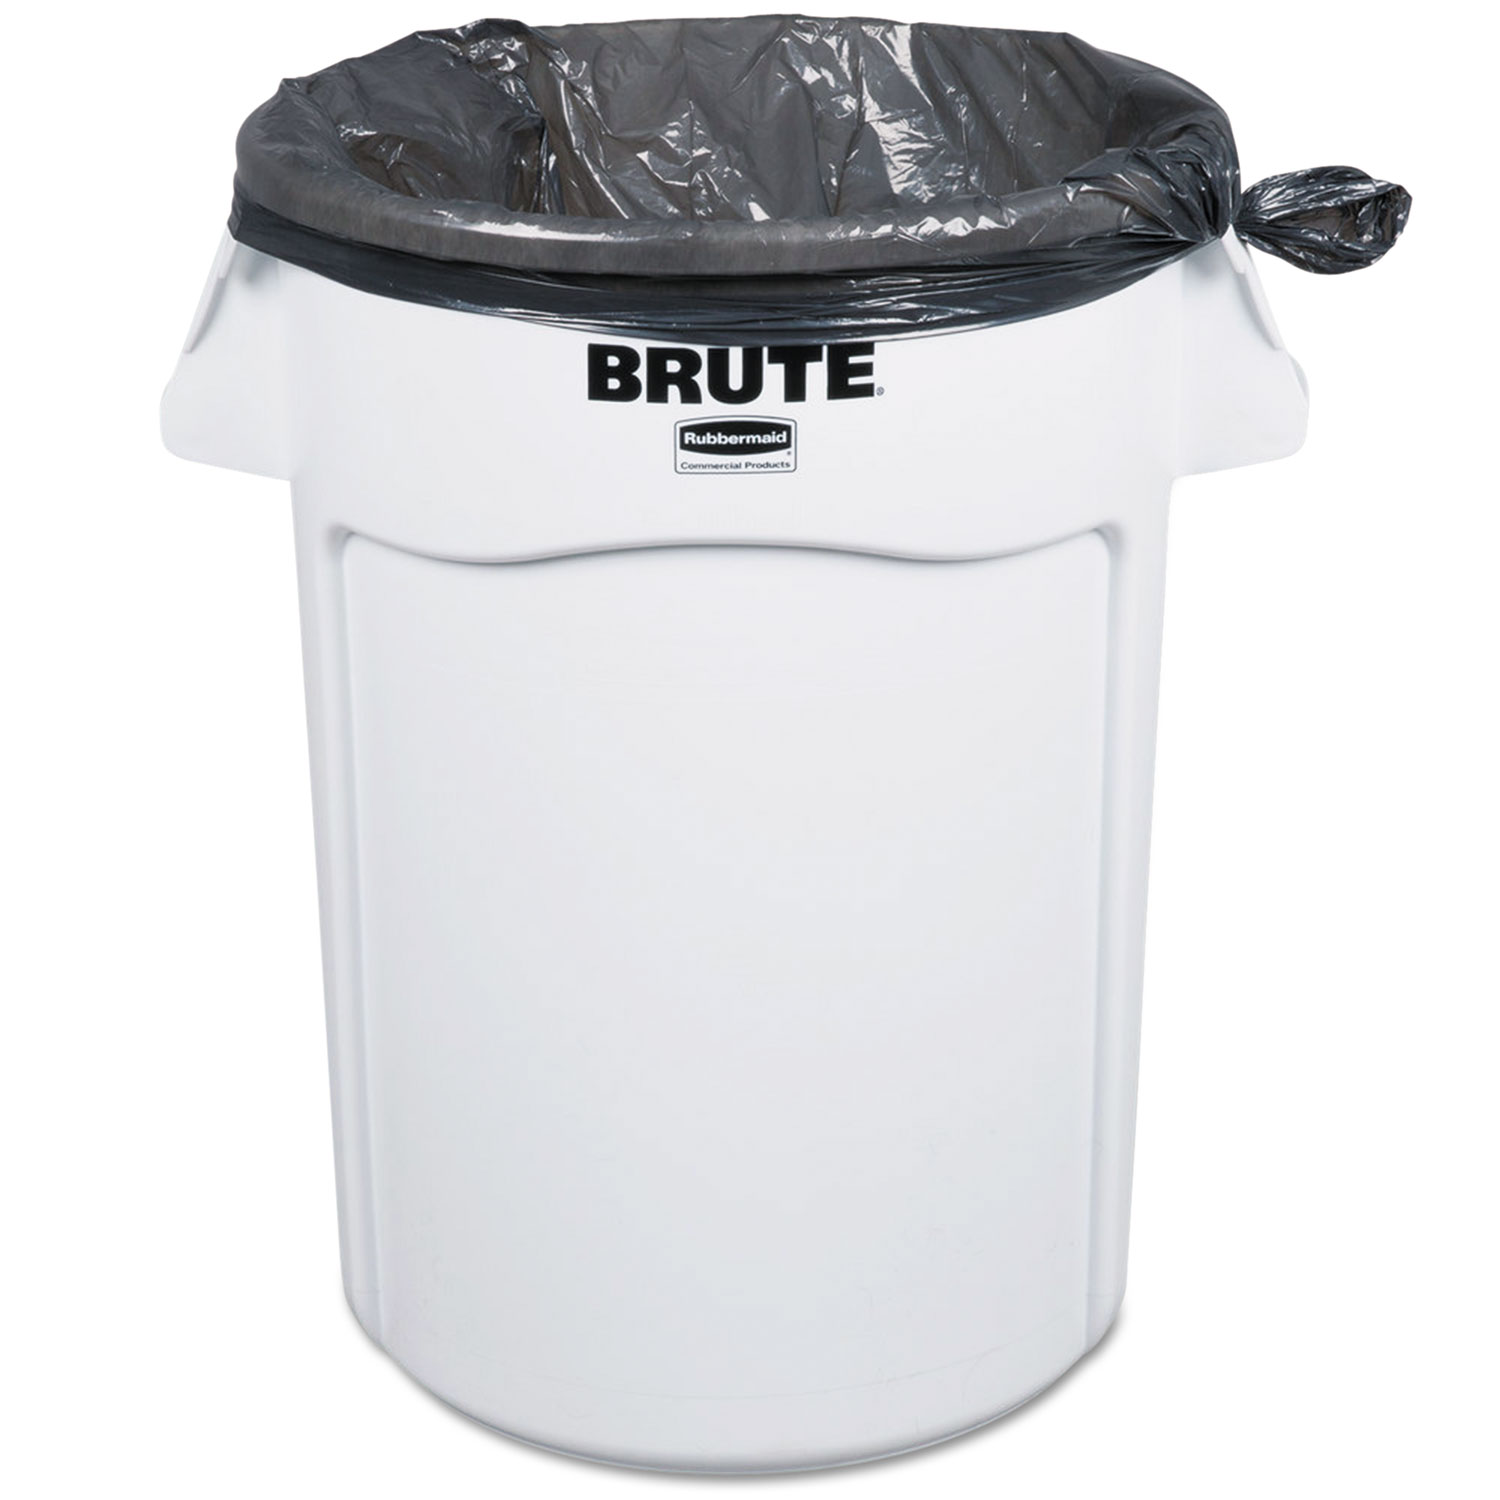 Brute Round Container, 44 gallon, White